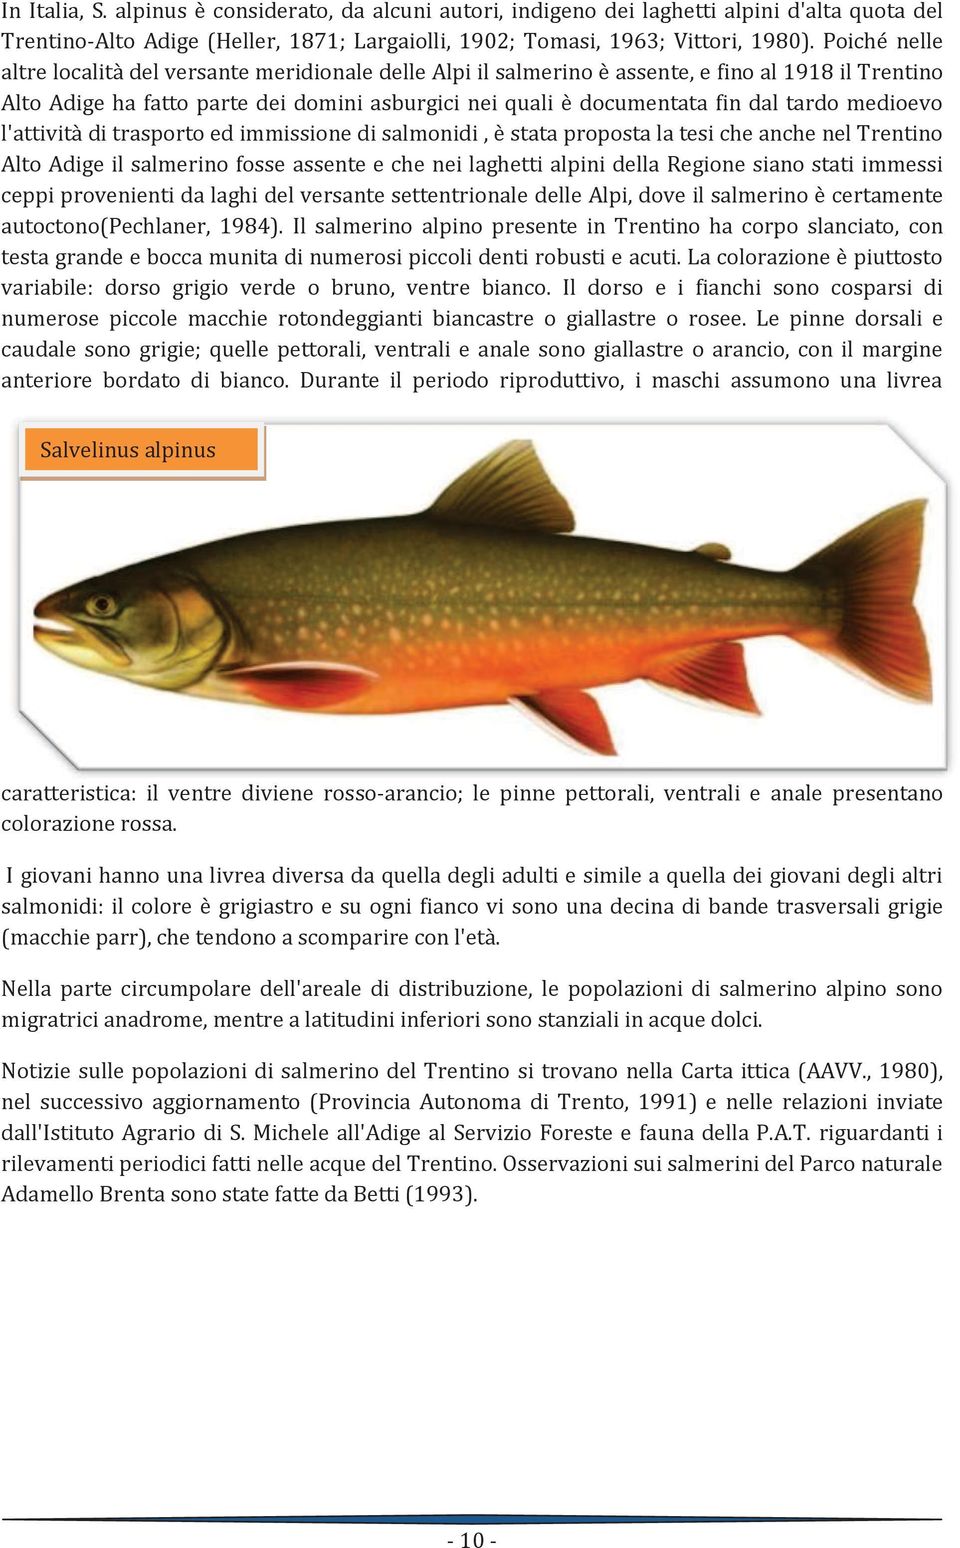 medioevo l'attività di trasporto ed immissione di salmonidi, è stata proposta la tesi che anche nel Trentino Alto Adige il salmerino fosse assente e che nei laghetti alpini della Regione siano stati